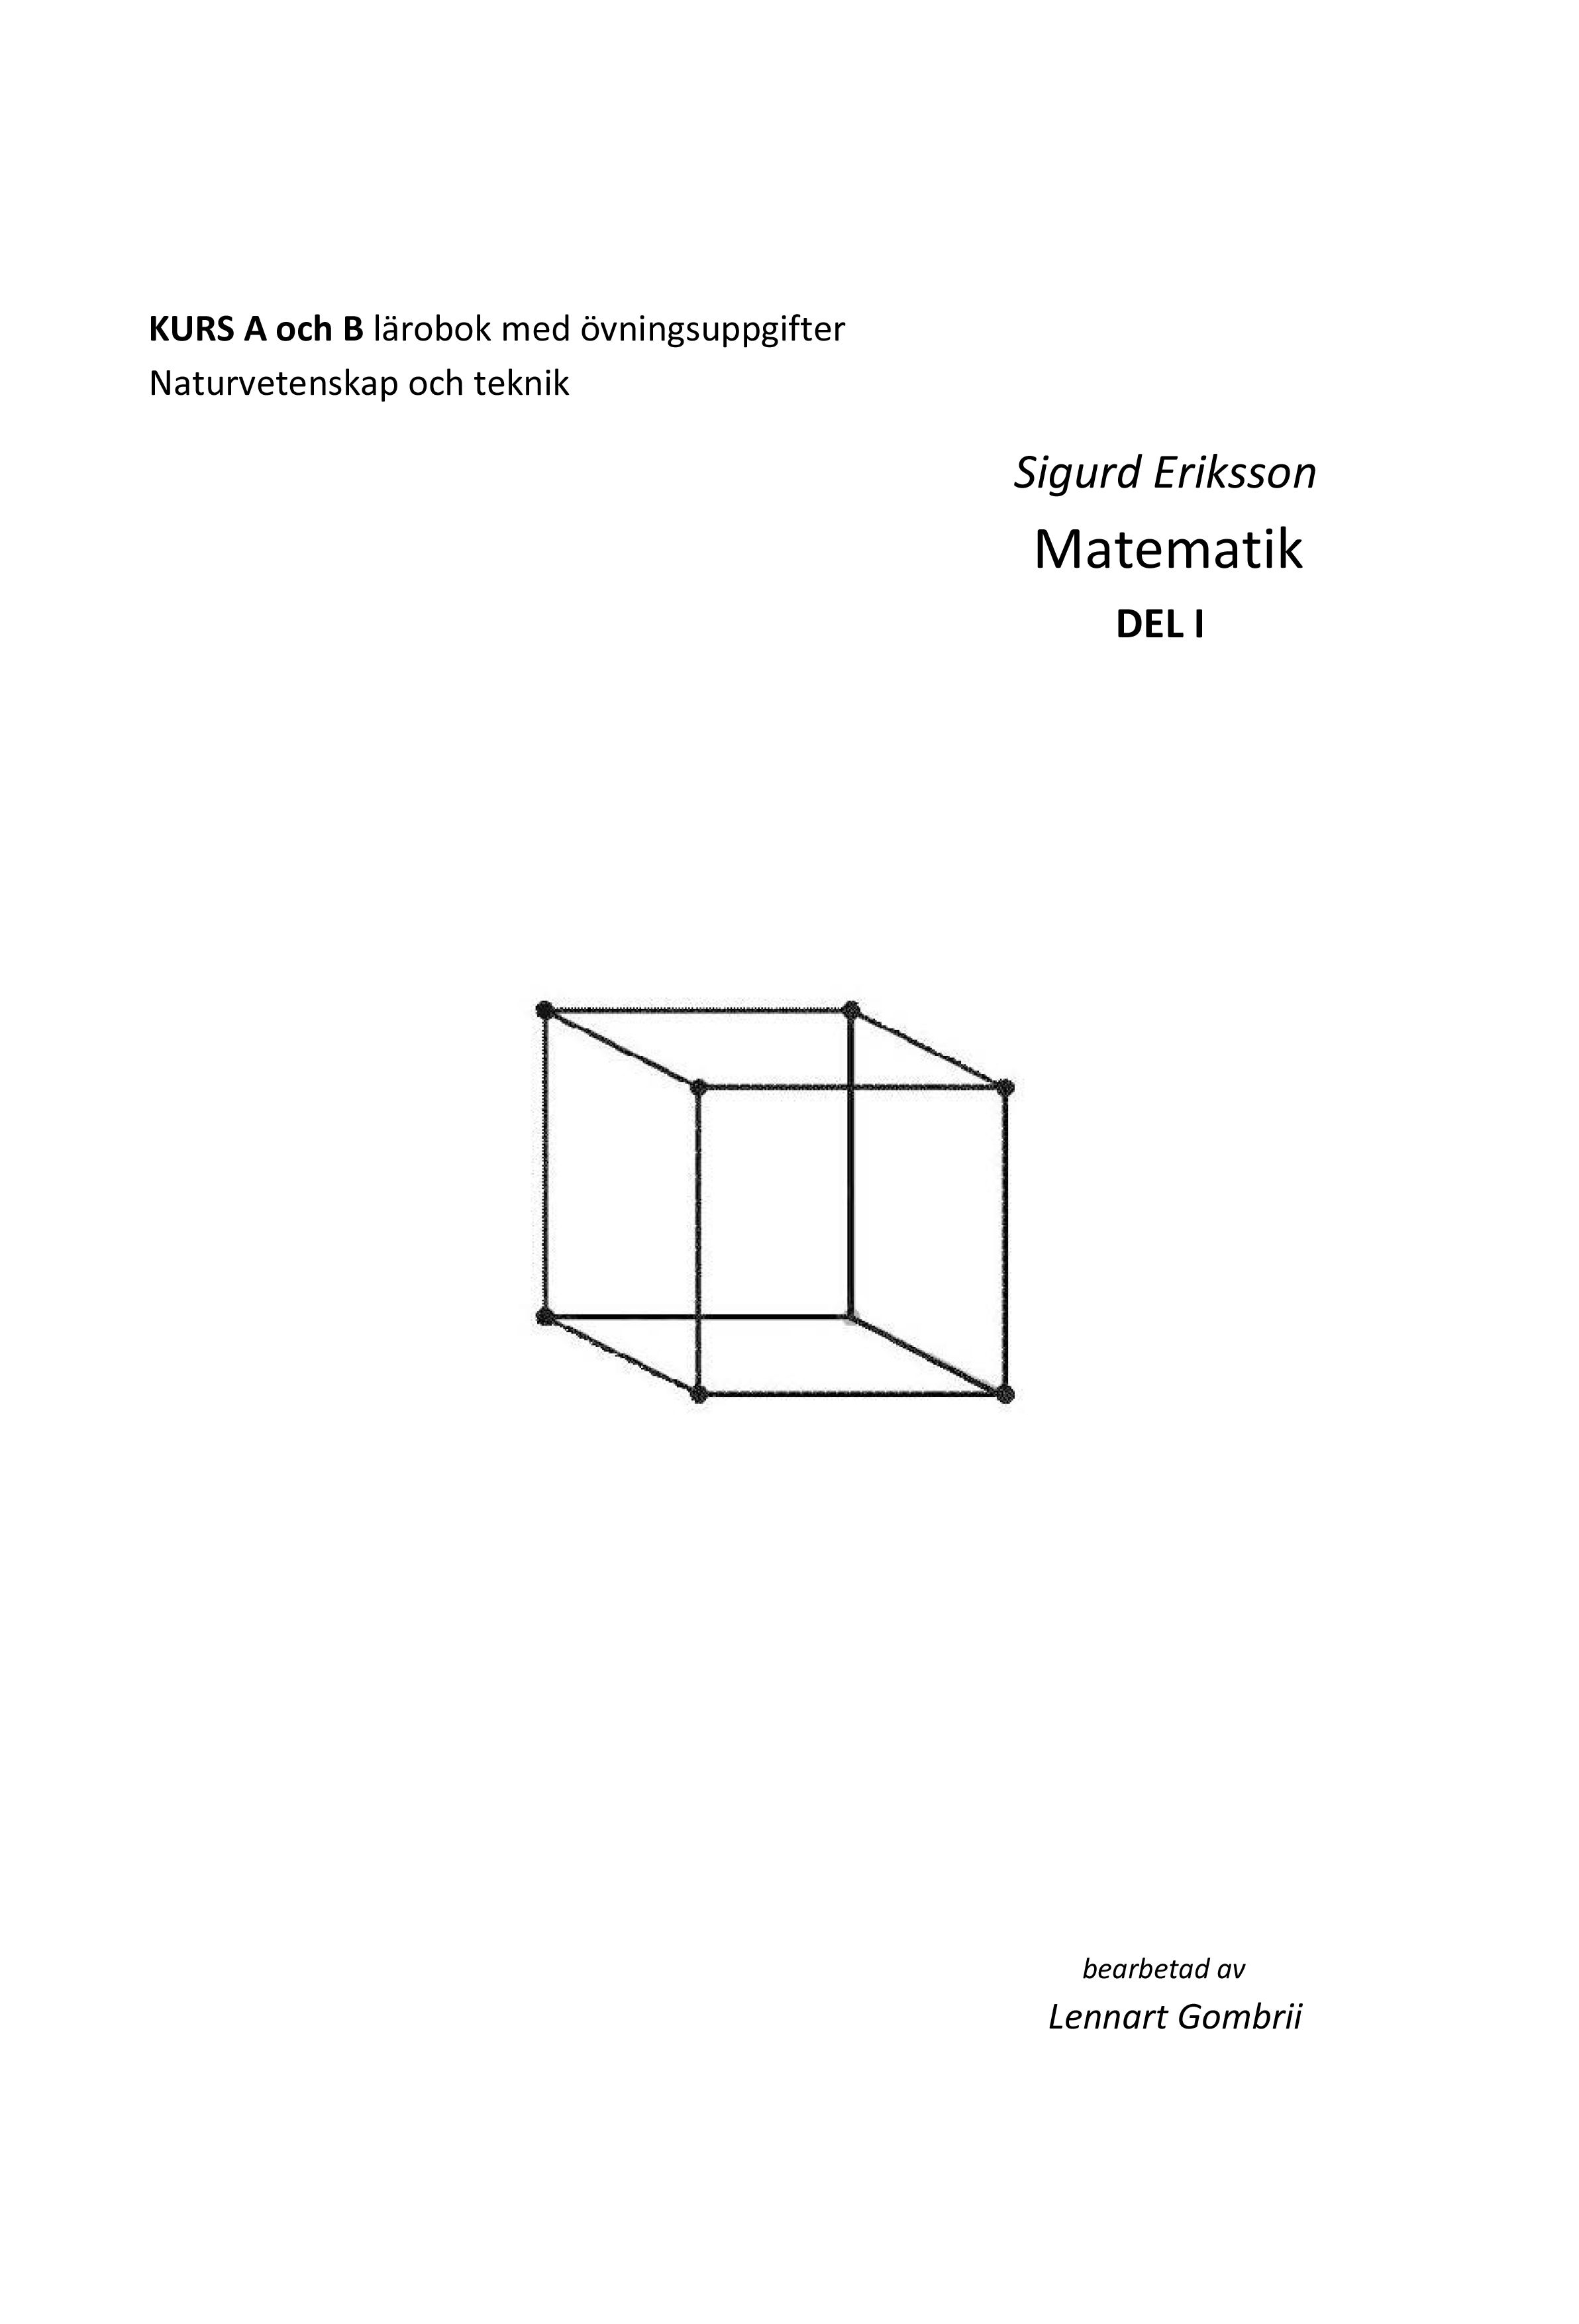 Sigurd Eriksson Matematik DEL I, e-bog af Lennart Gombrii